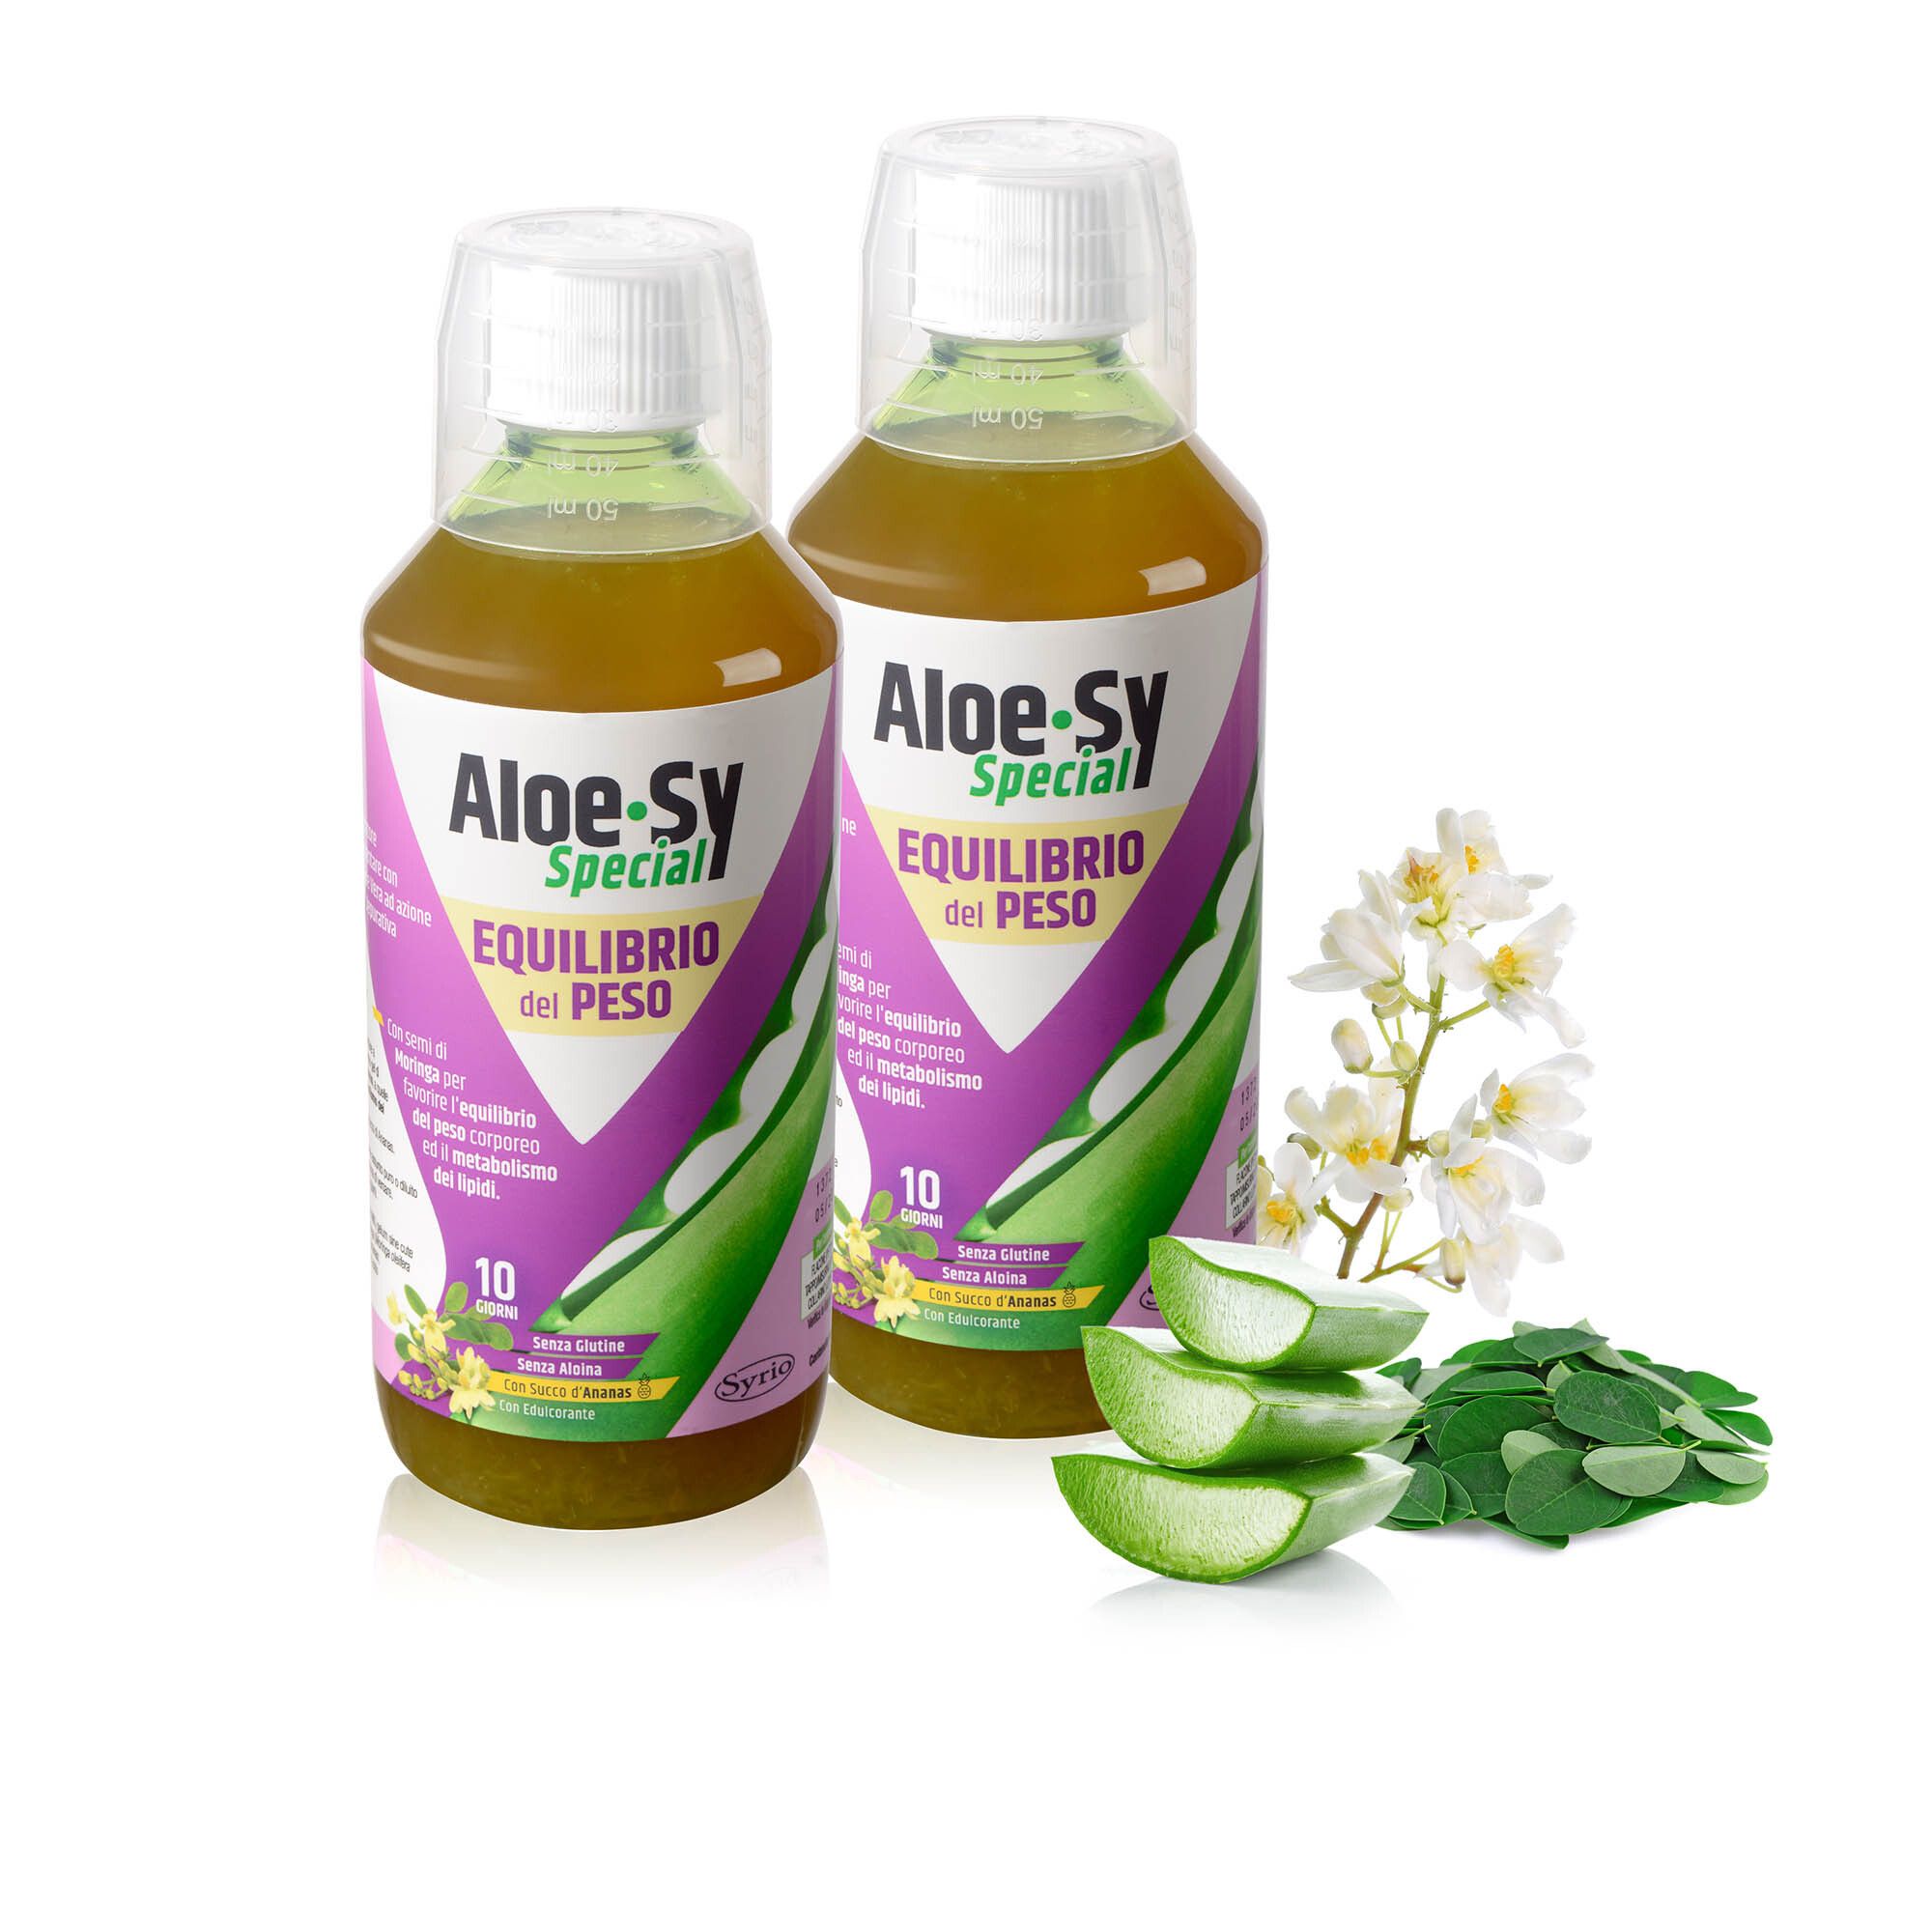 Image of Aloe-Sy Special: 2 integratori per l'equilibrio del peso